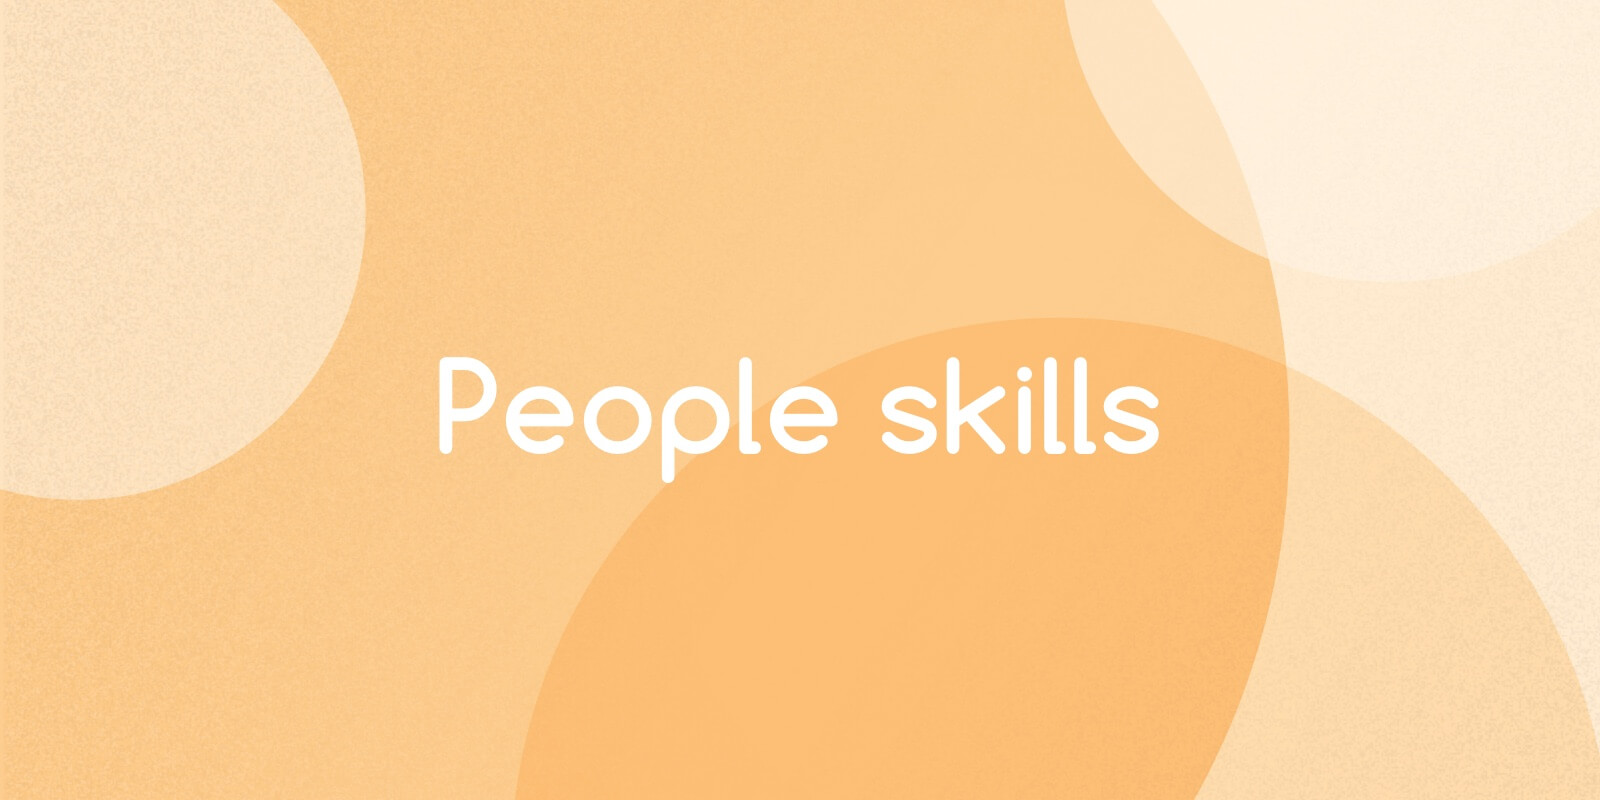 People Skills